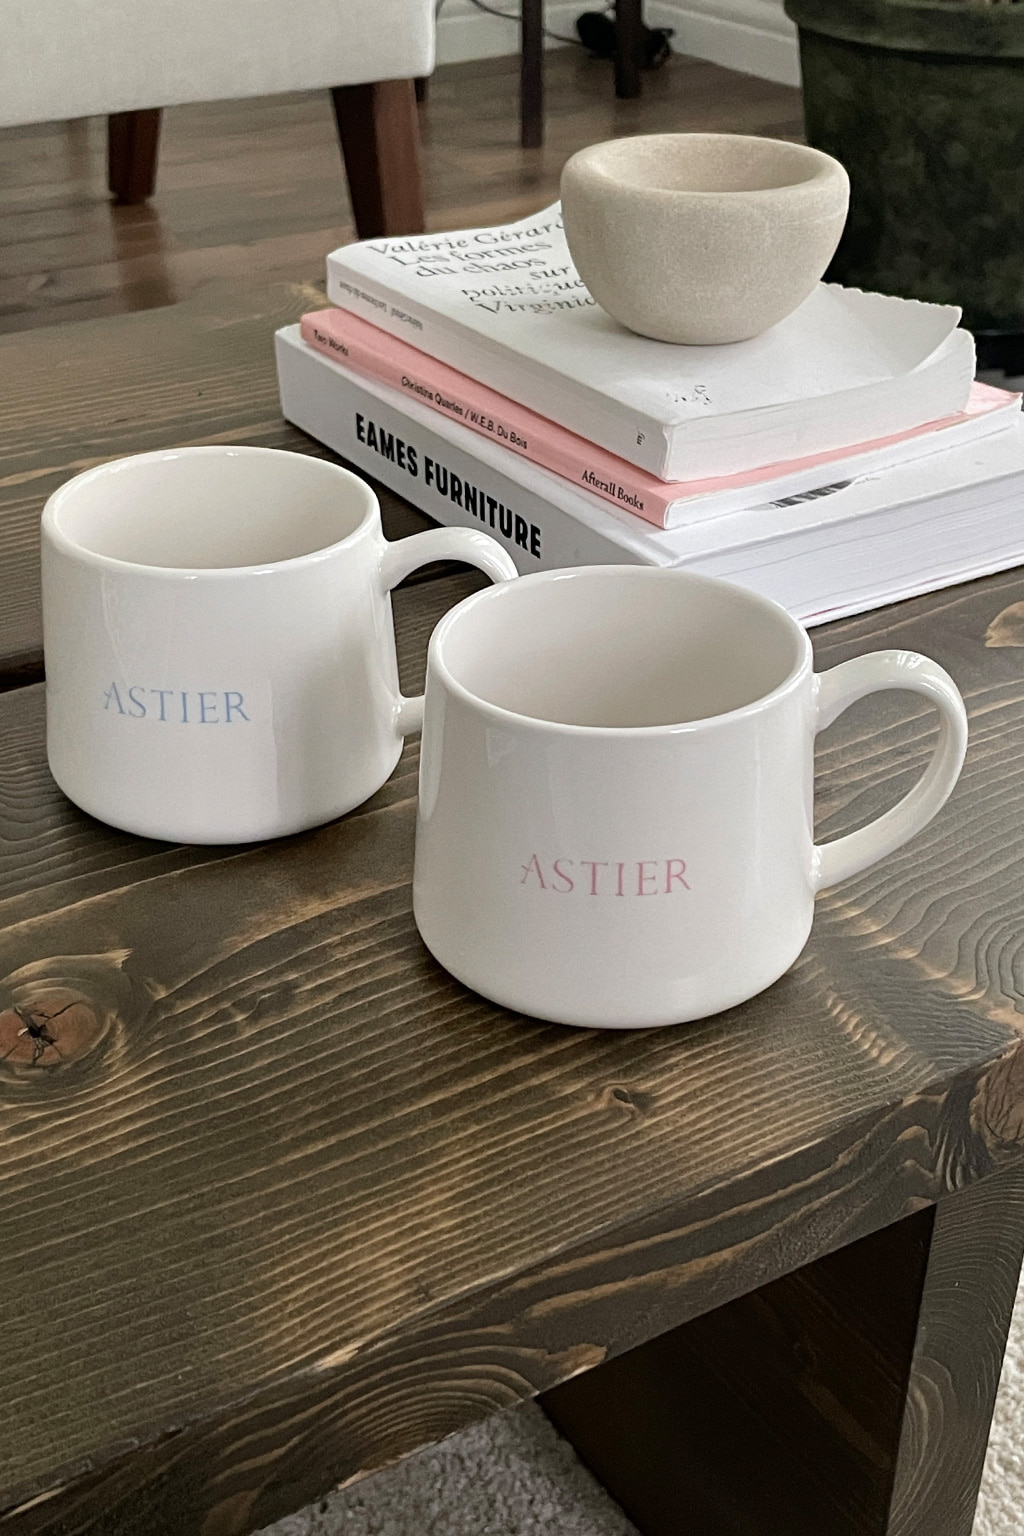 [ASTIER] astier mug cup